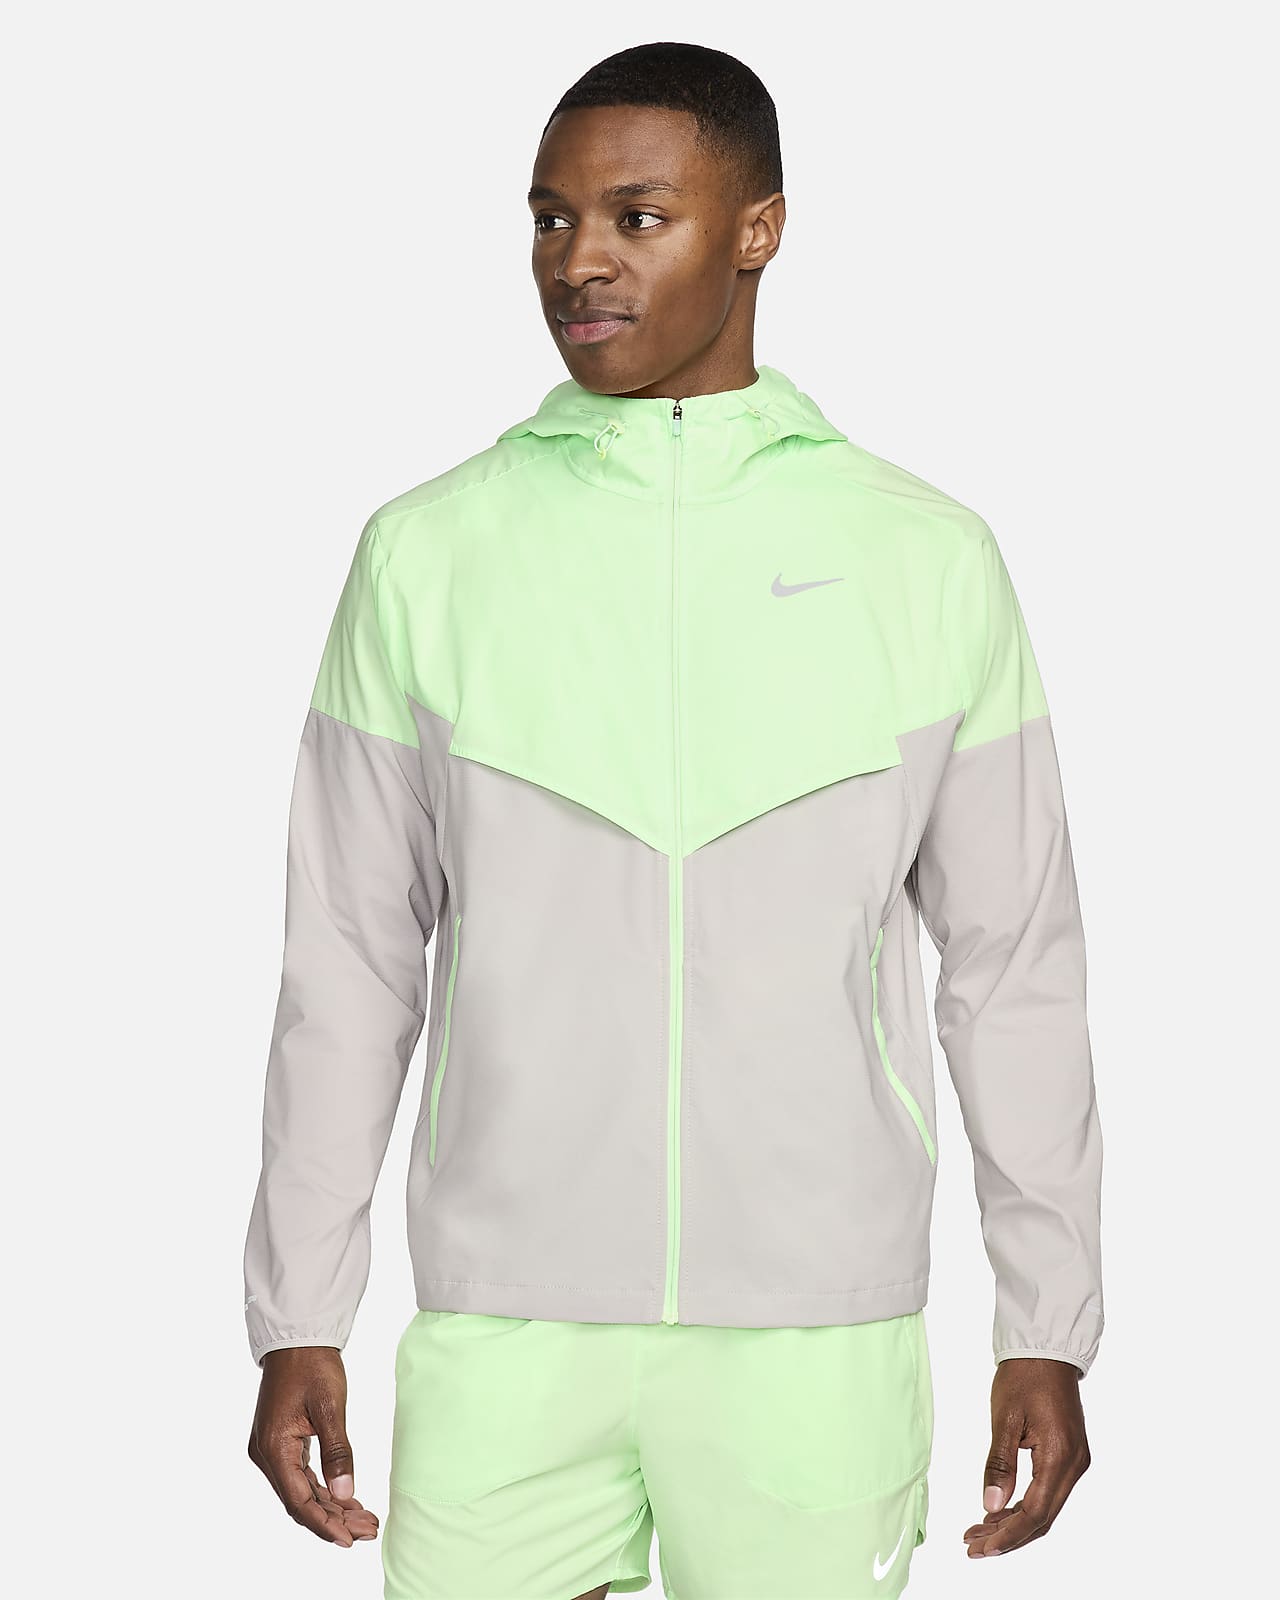 Nike Windrunner Men's Repel Running Jacket.